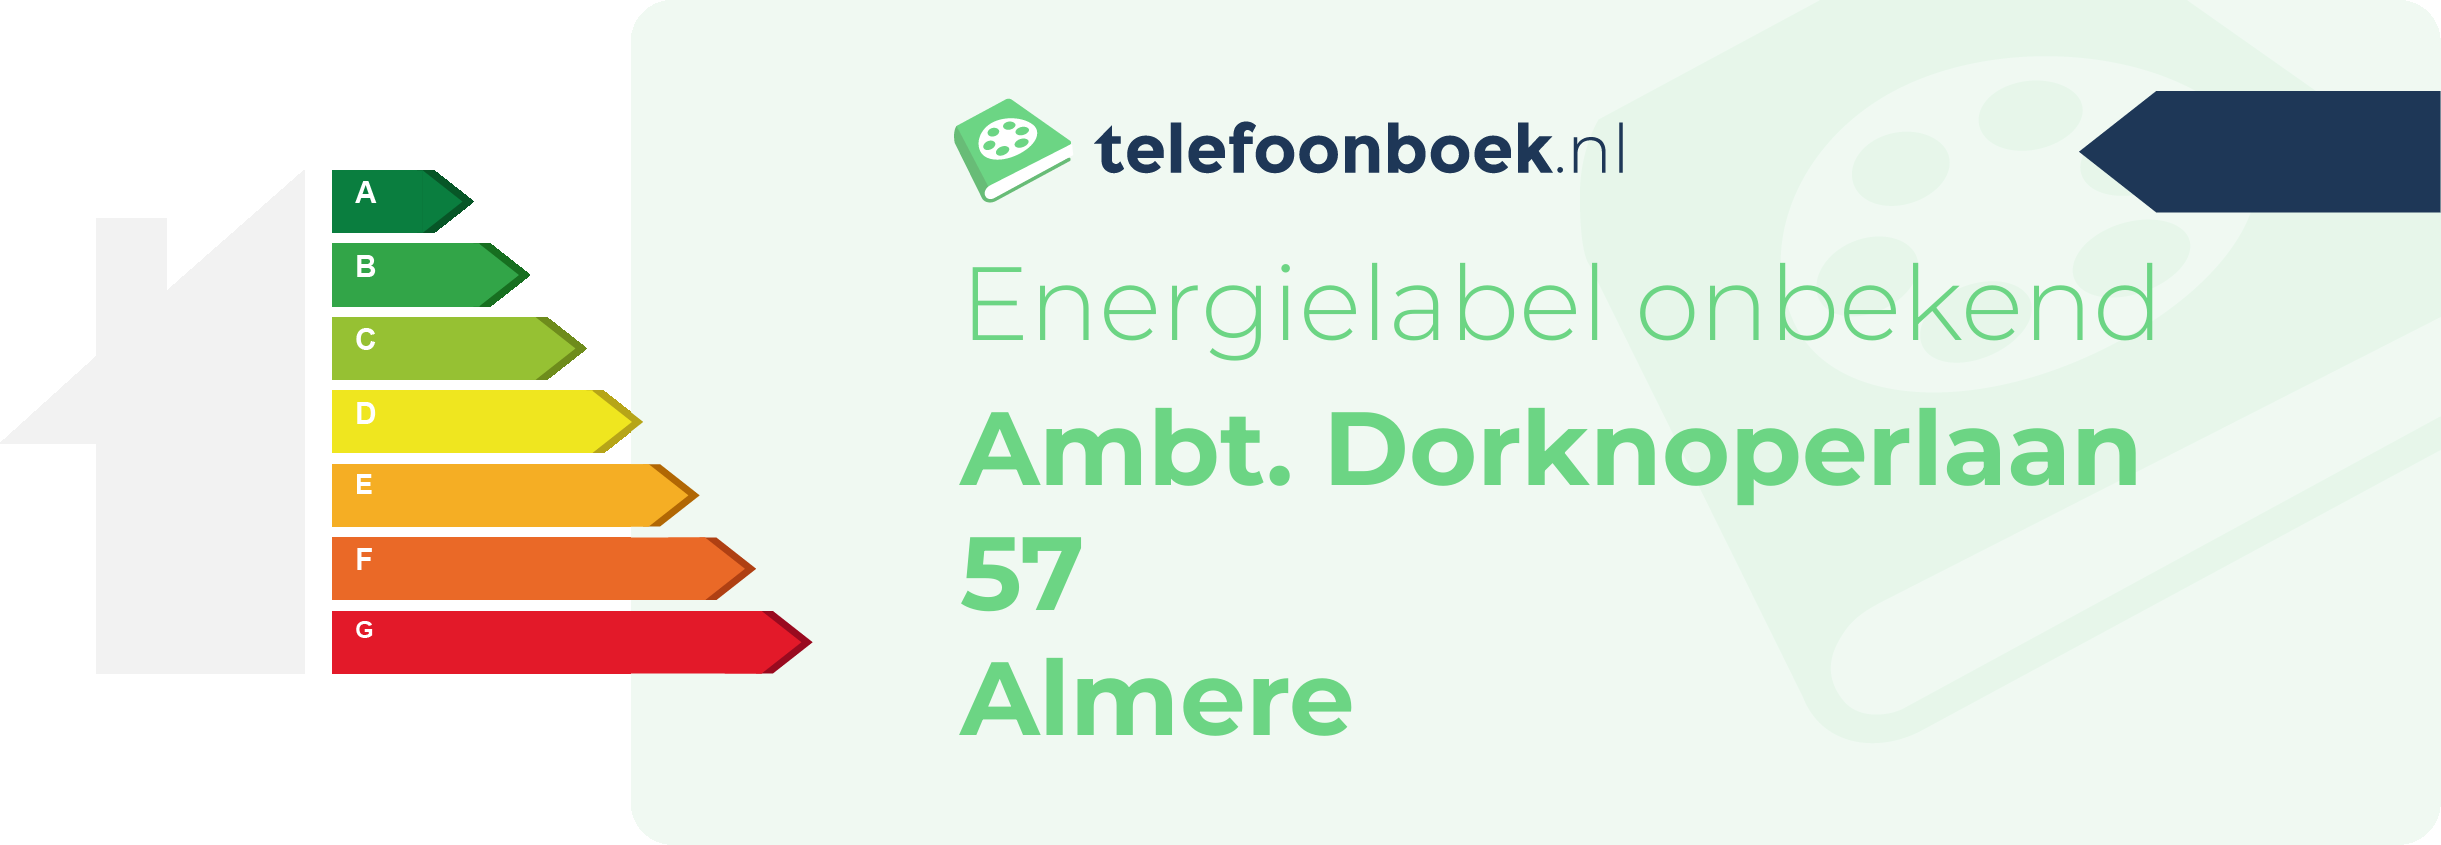 Energielabel Ambt. Dorknoperlaan 57 Almere